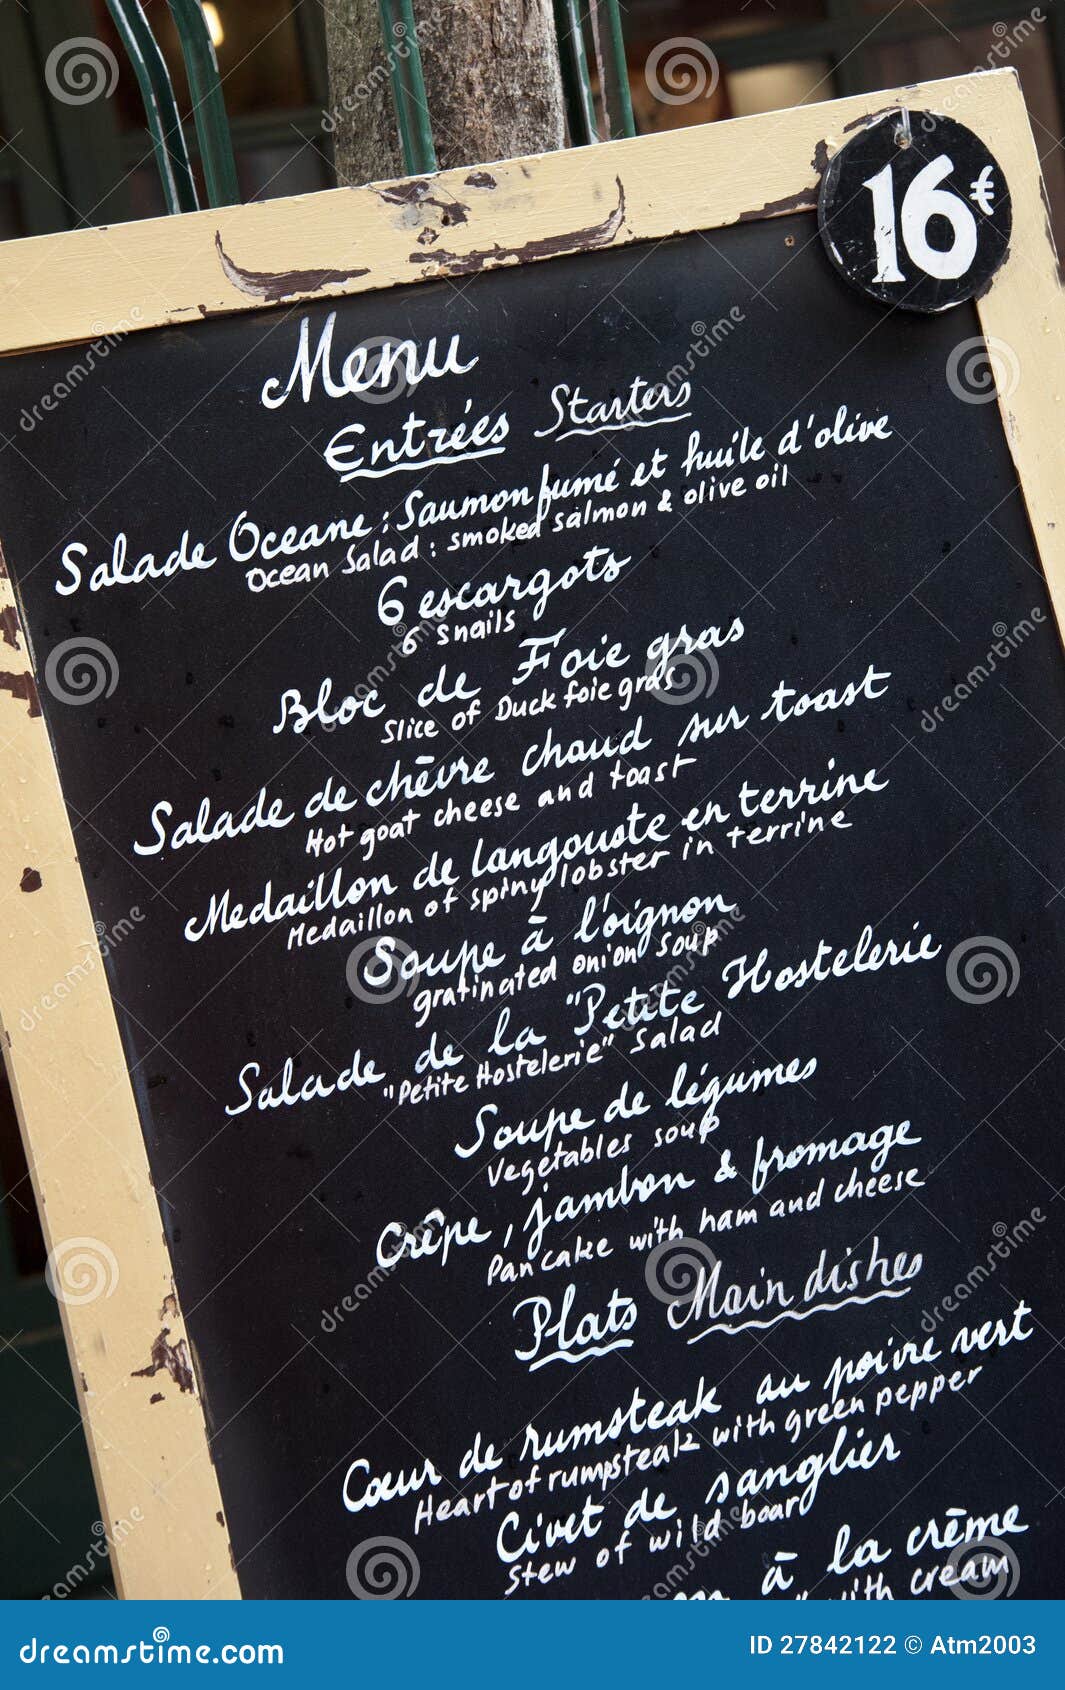 french cafe menu design